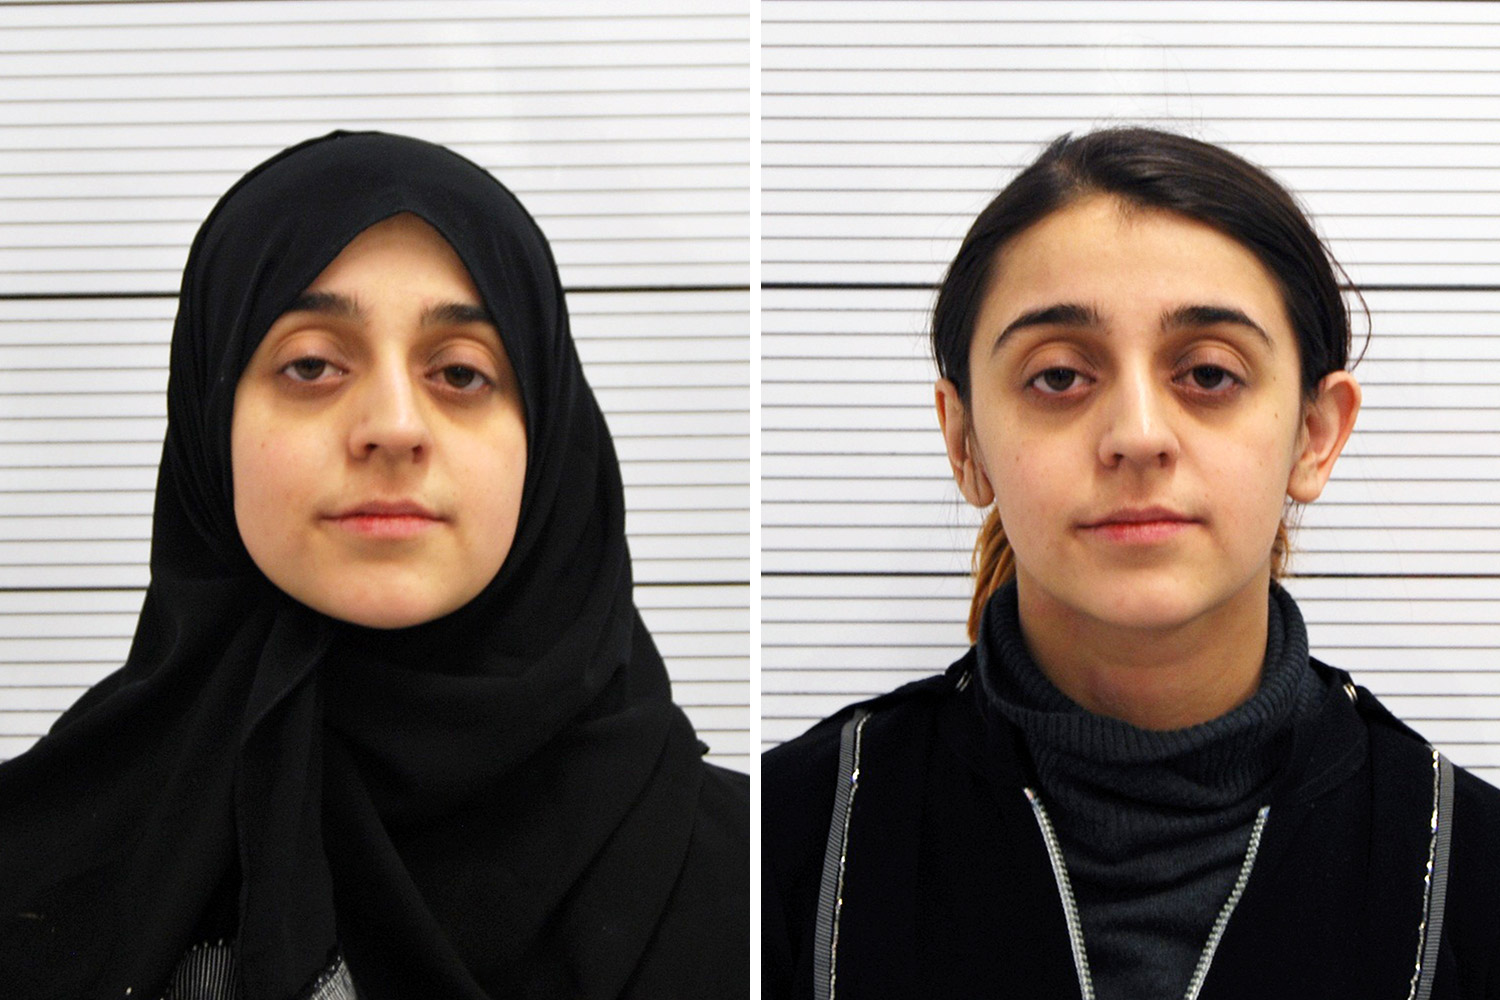 Kisgyerekével együtt szökött el a brit nő az ISIS-hez, hogy terroristának nevelje gyereket